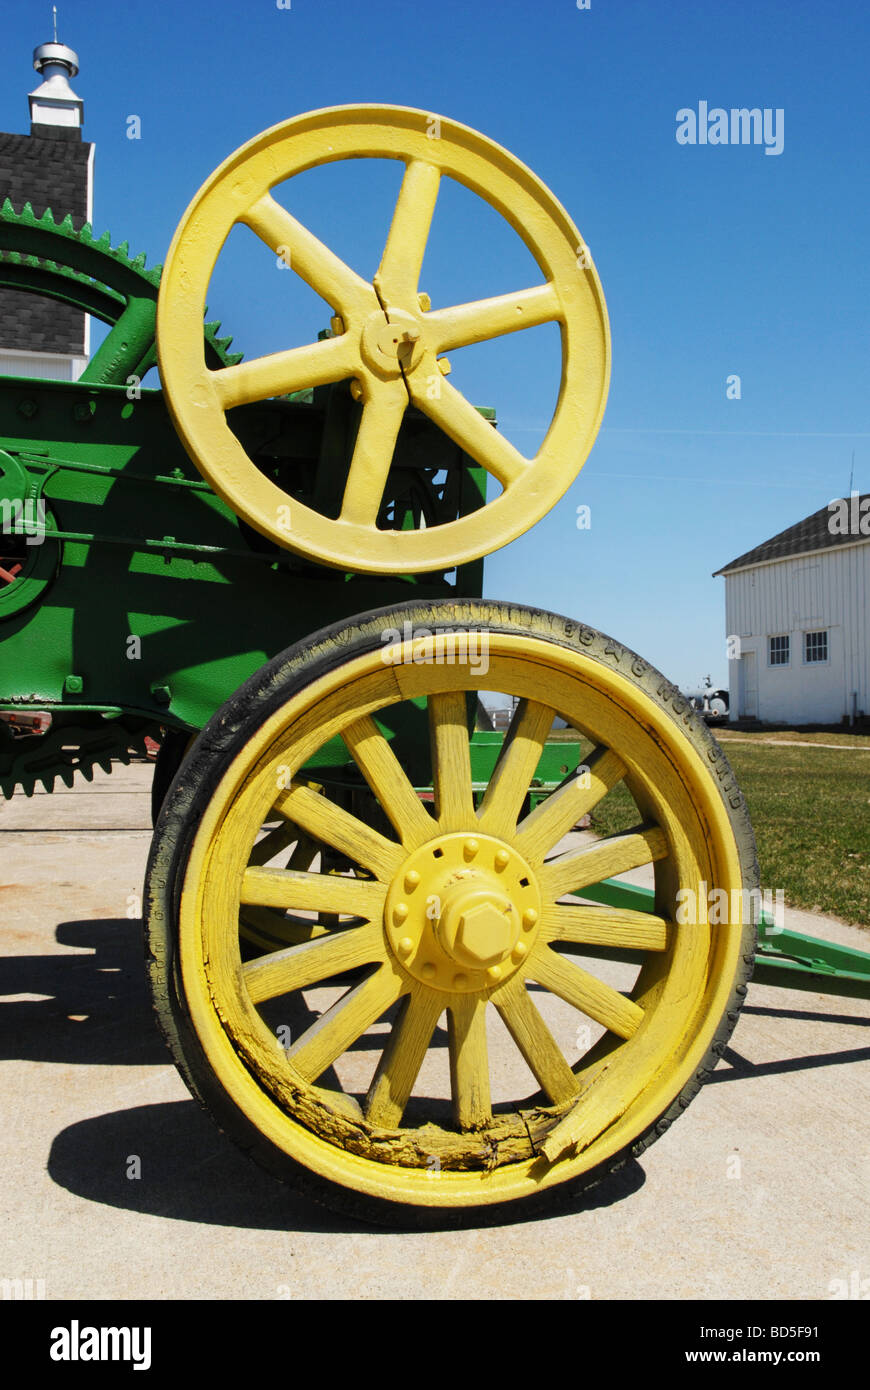 Roues sur une ancienne machine agricole sont décorées dans des couleurs vives Banque D'Images